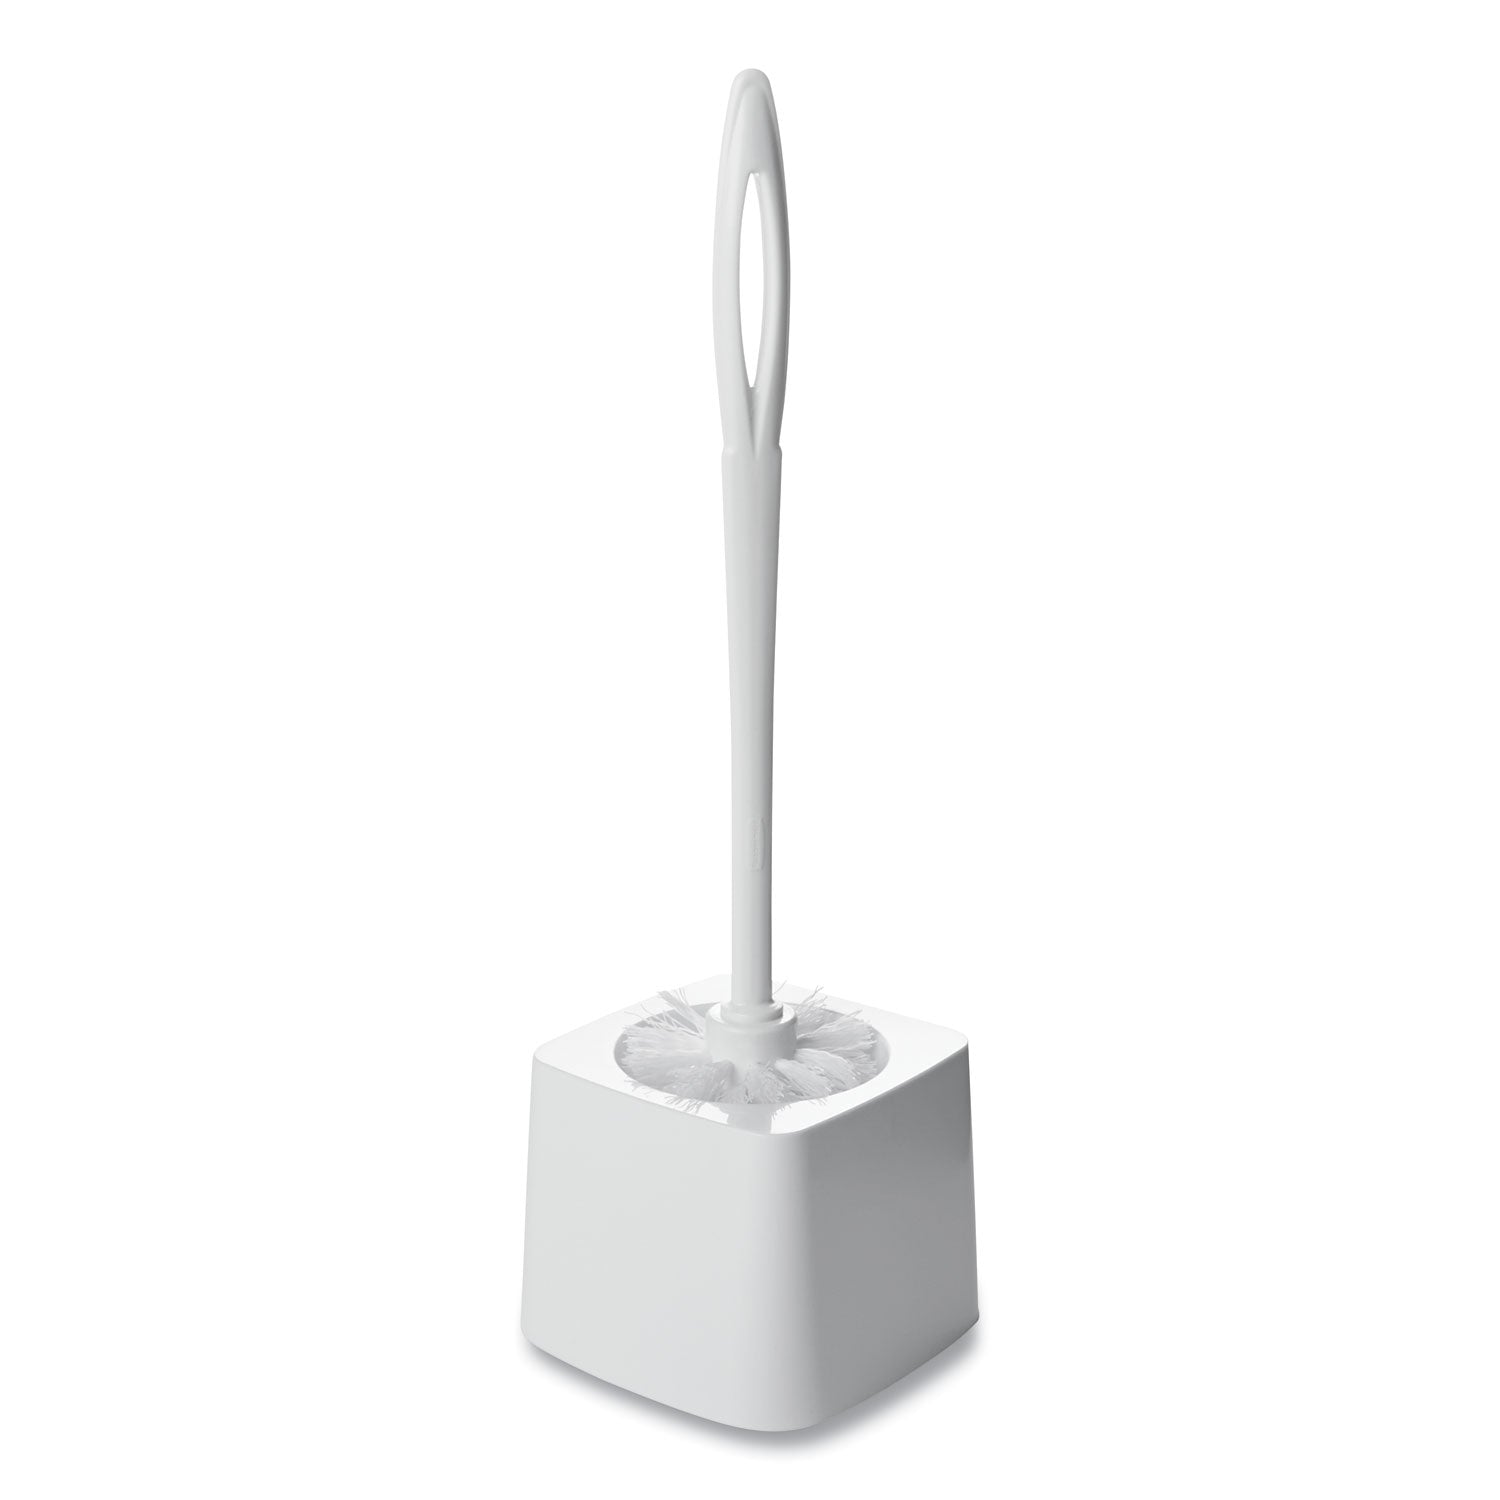 Commercial-Grade Toilet Bowl Brush Holder, White - 